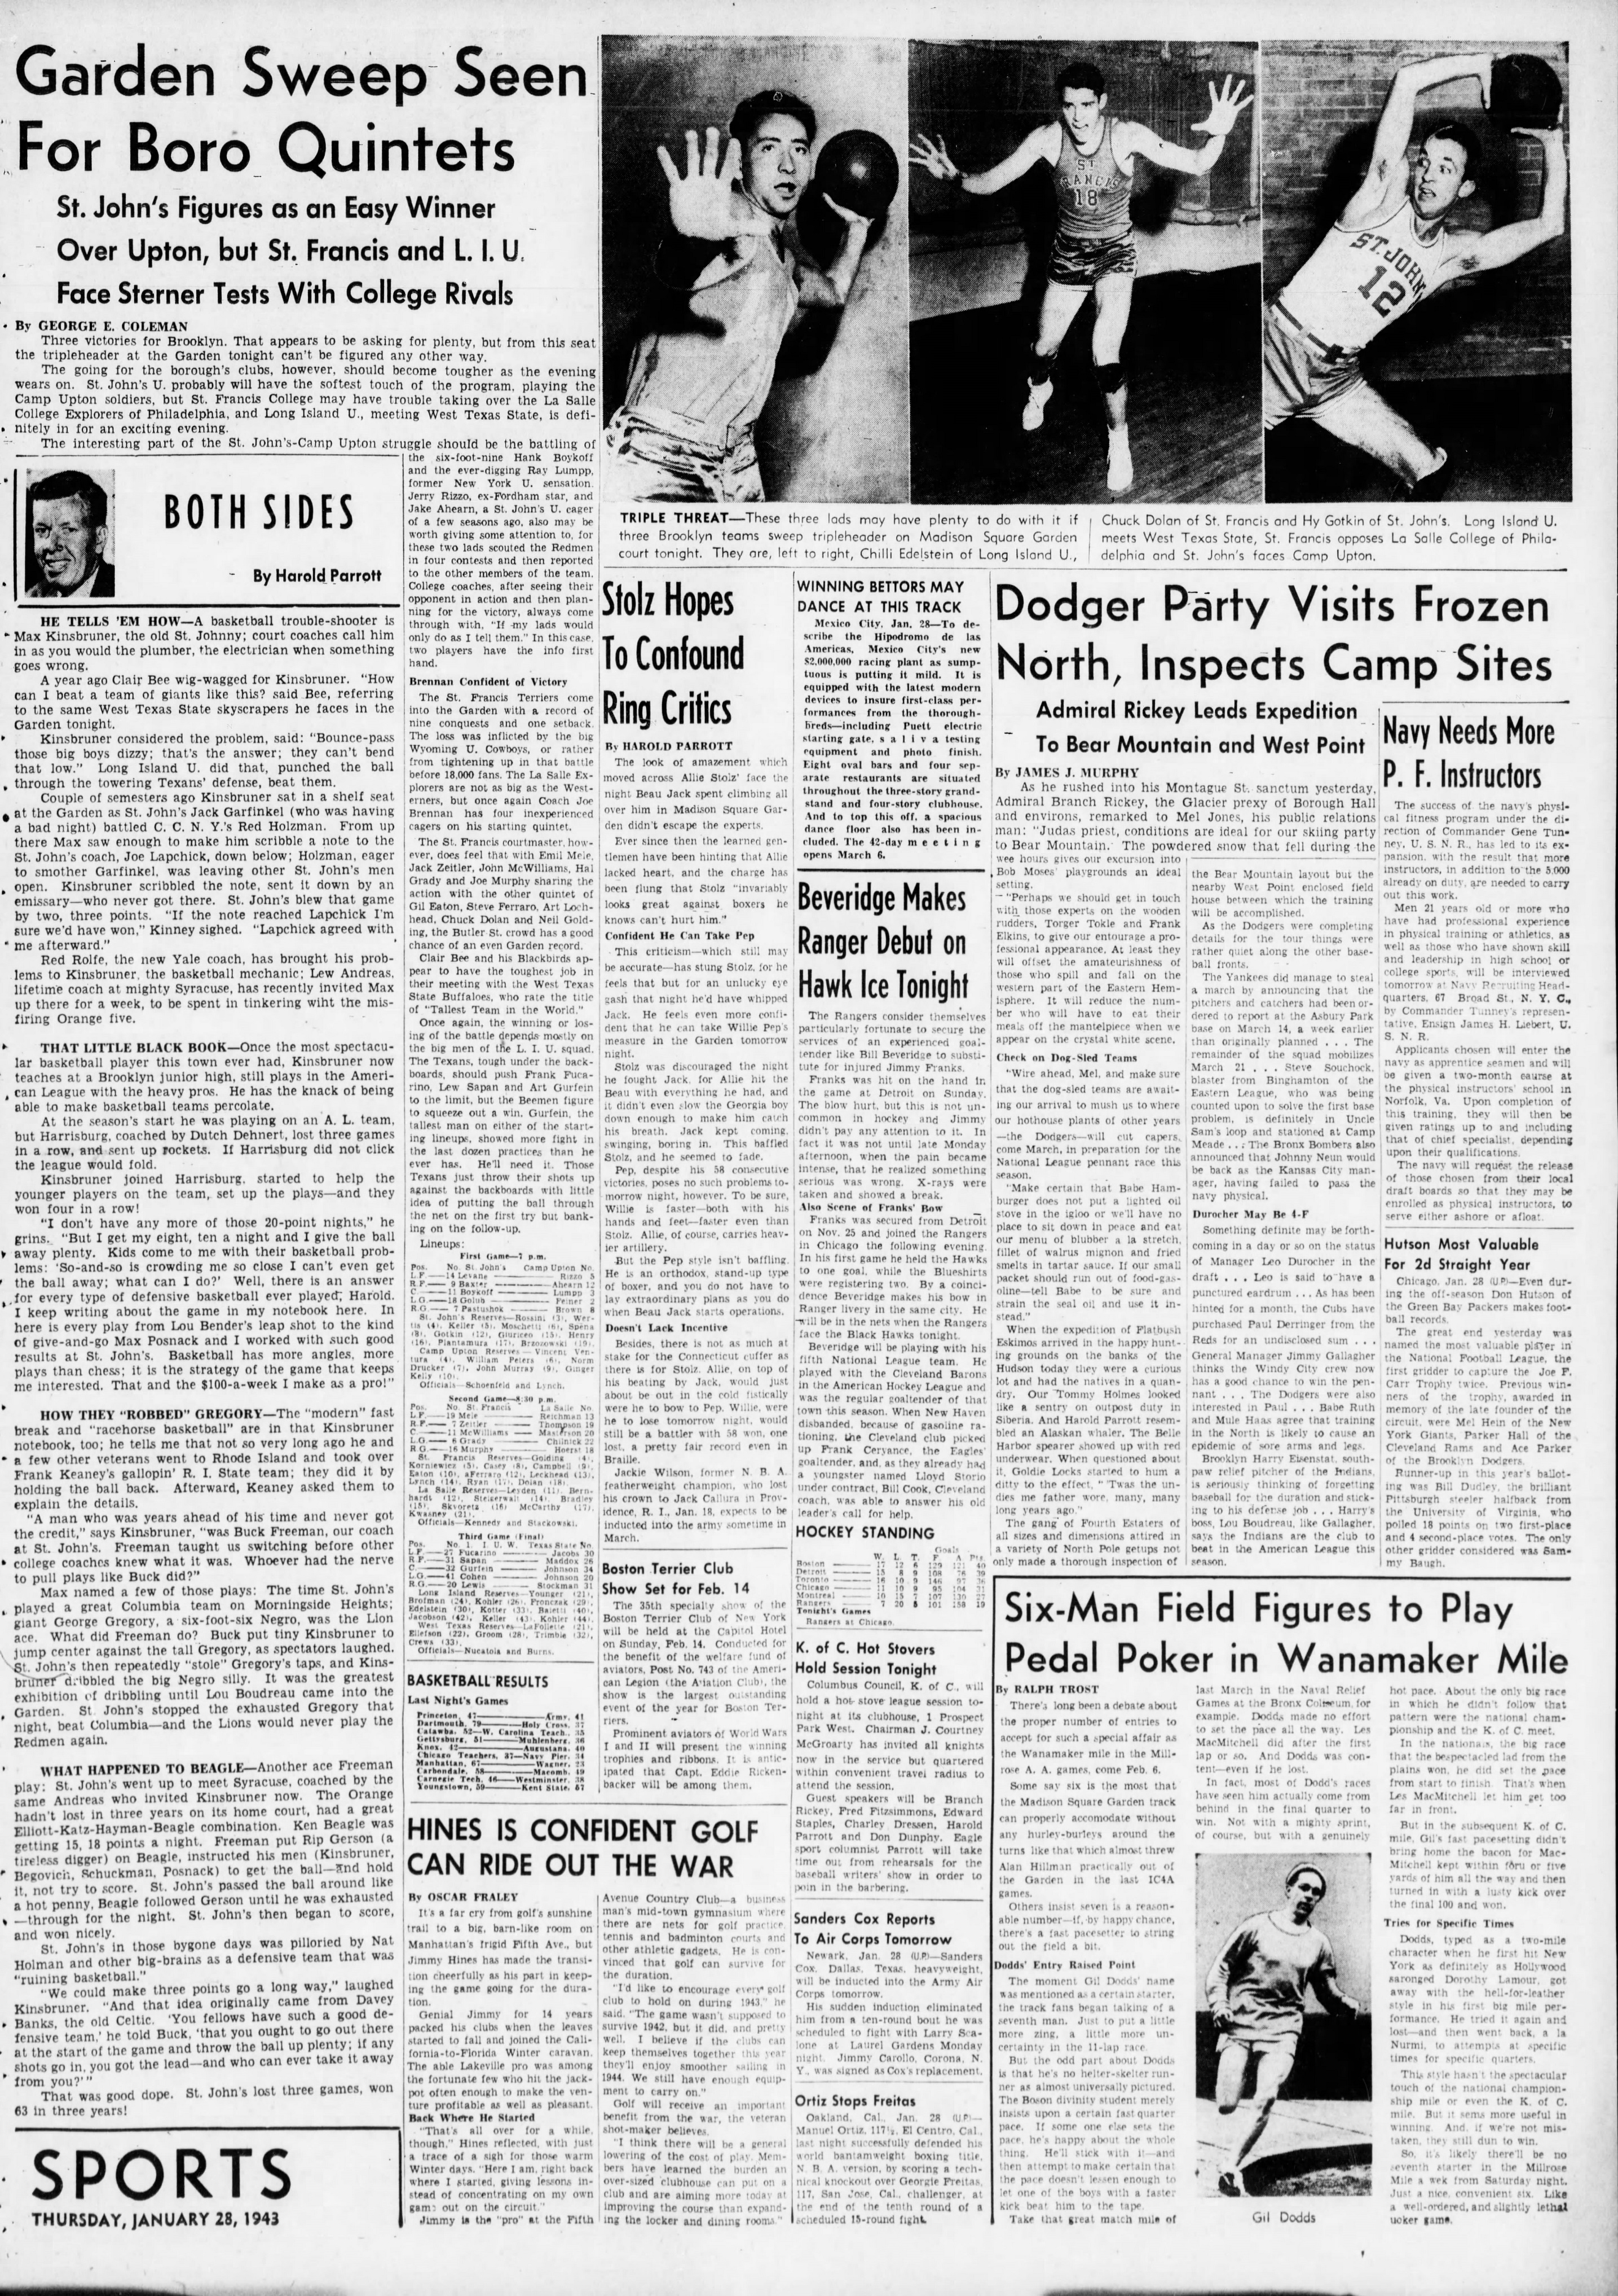 The_Brooklyn_Daily_Eagle_Thu__Jan_28__1943_(4).jpg